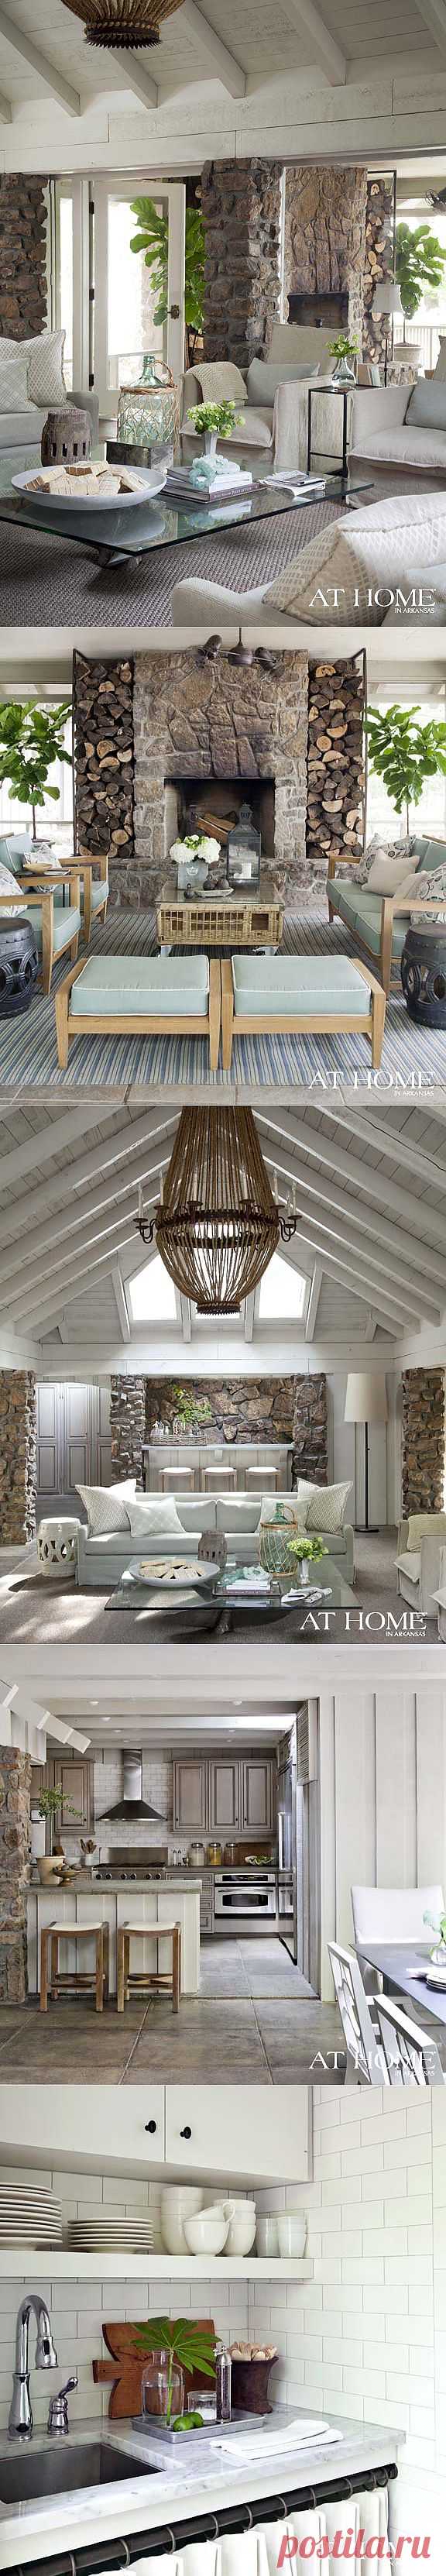 Великолепный дом у озера для семейного отдыха (дизайнер Heather Chadduck) / Дизайн интерьера / Архимир